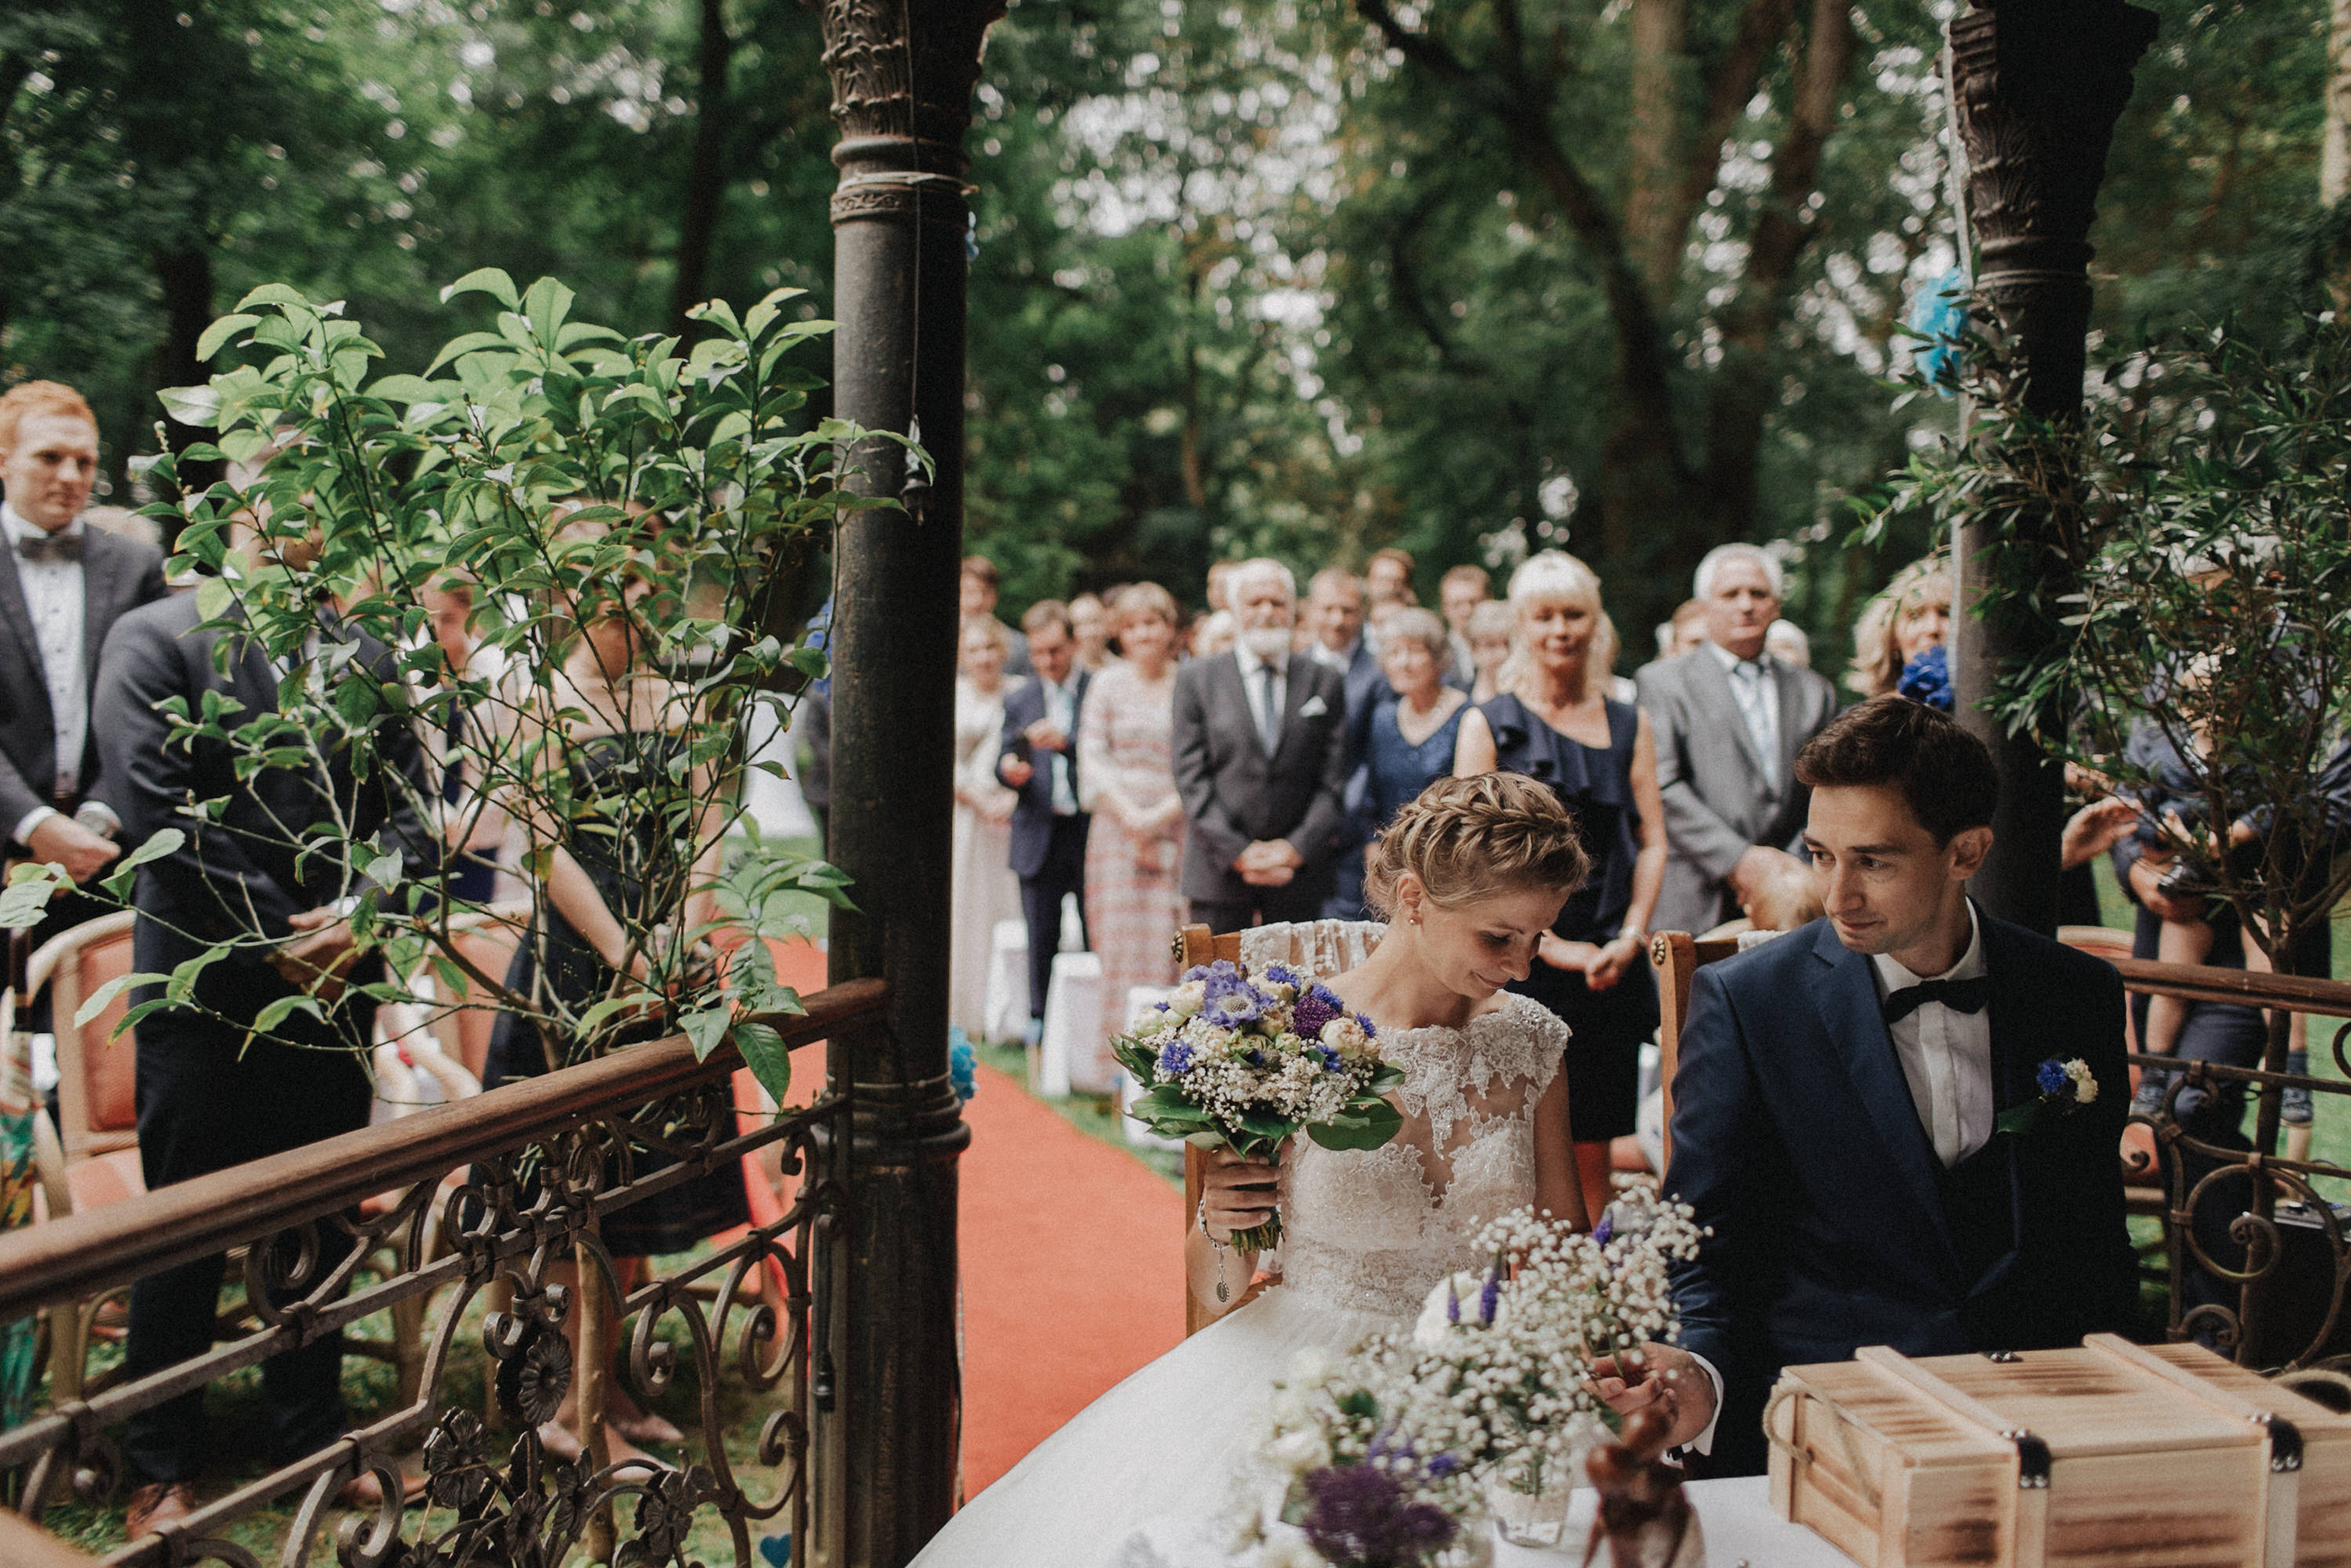 Zu sehen ist ein Hochzeitsfoto einer Hochzeitsreportage einer Hochzeit aus dem Jahr 2017. Gefeiiert wurde im Schloss Bredenfelde in Mecklenburg-Vorpommern. Eine Schlosshochzeit, fotografiert von den Hochzeitsfotografen Tom und Lia aus Rostock.